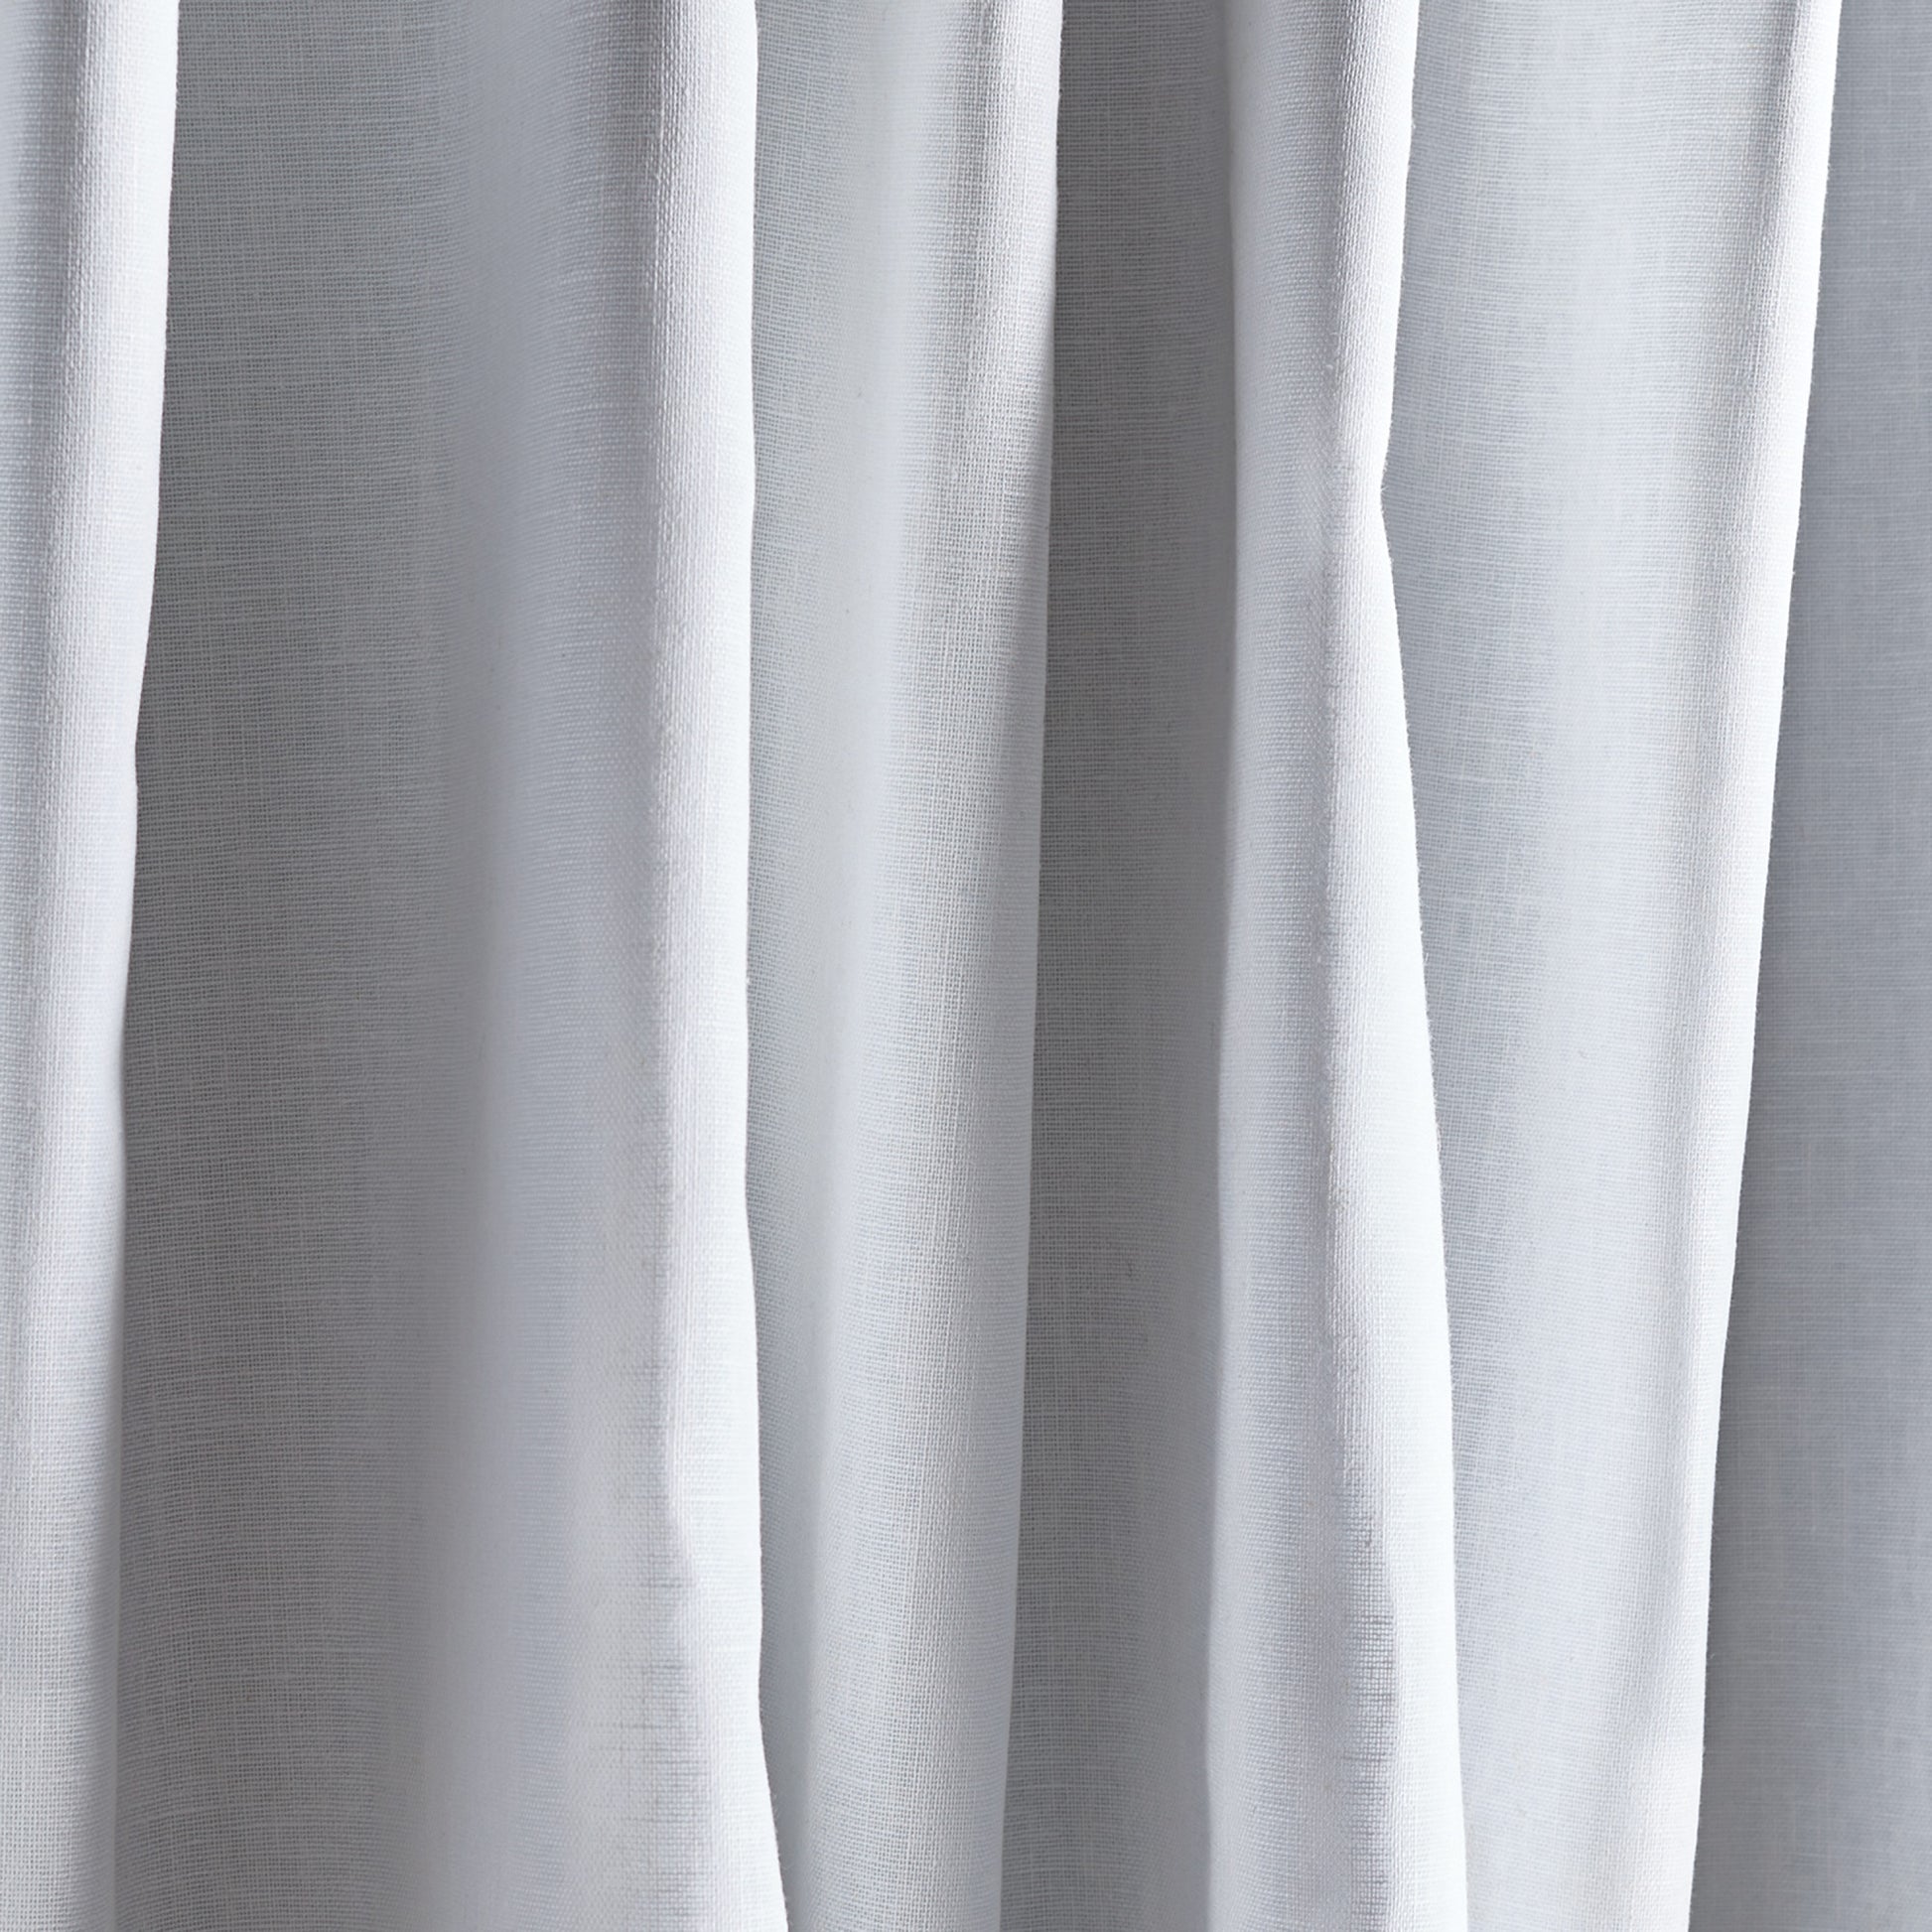 Martha Stewart Lido Linen Curtain Panel 